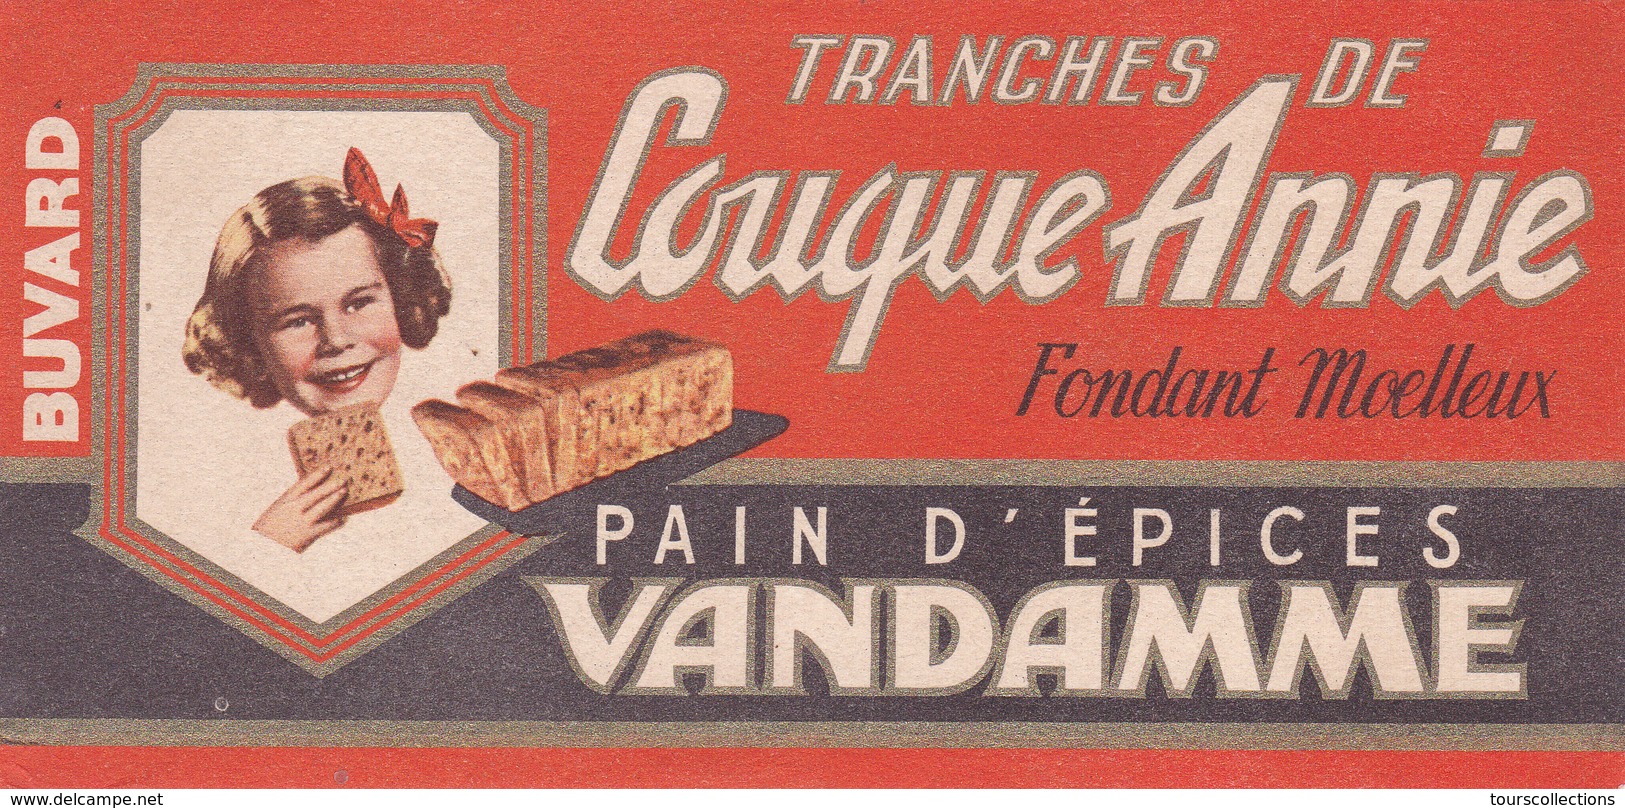 BUVARD PAIN D'EPICES VANDAMME - Tranches De Couque Annie - Fondant Moelleux - Gingerbread